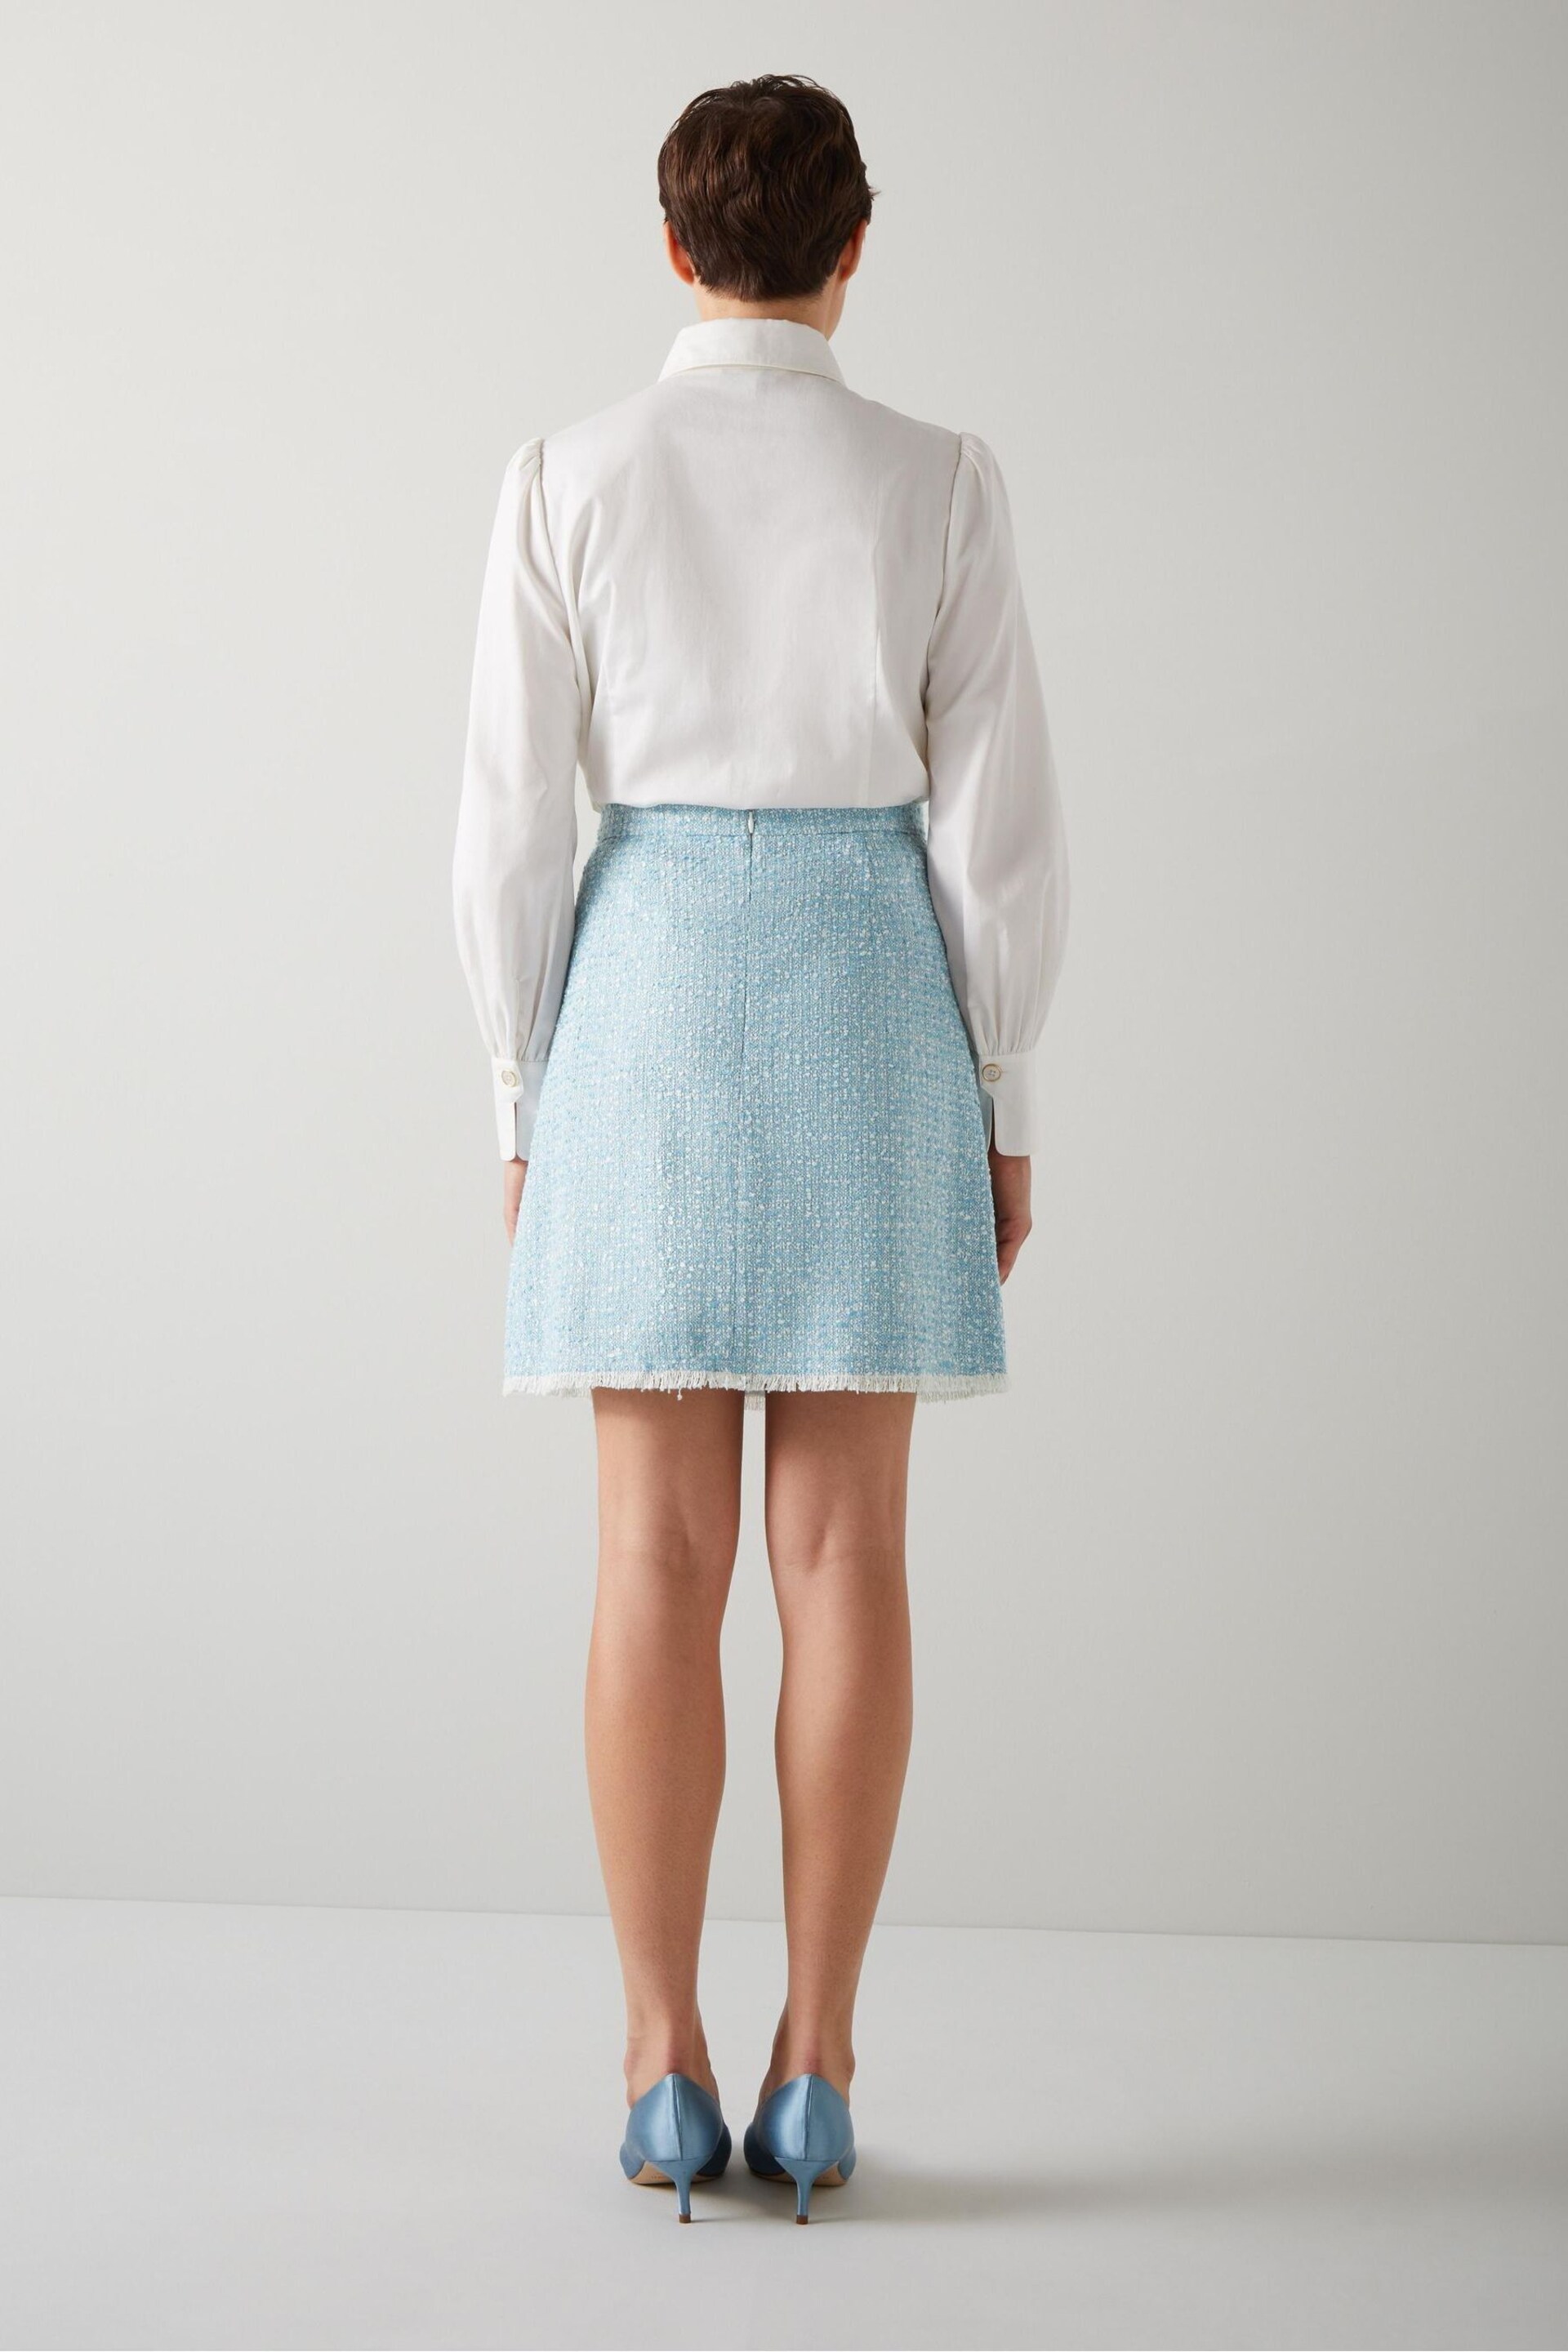 LK Bennett Karis Italian Cotton Blend Tweed Skirt - Image 2 of 4